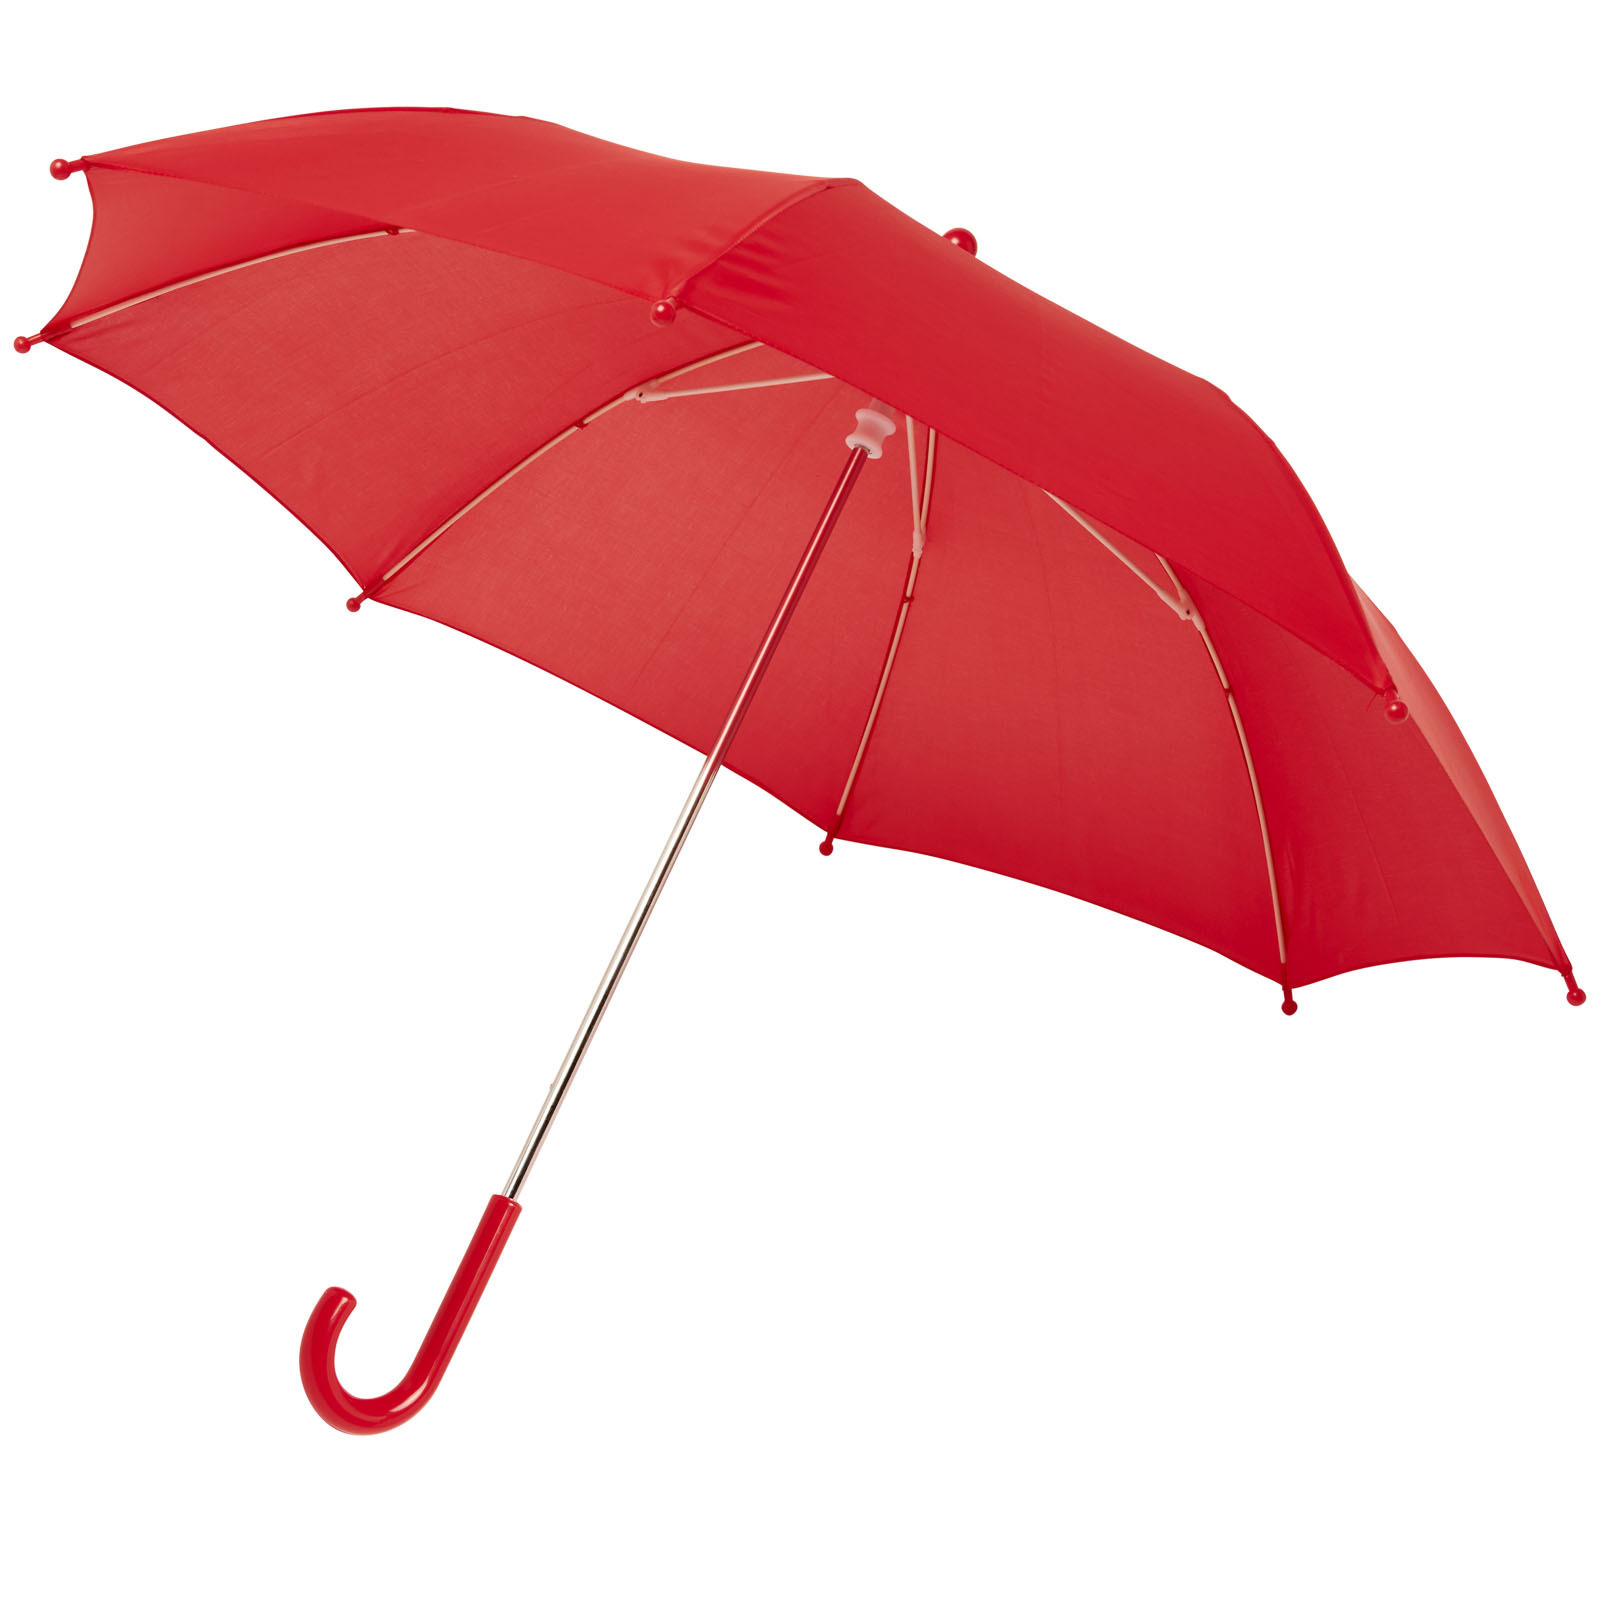 Storm paraplu voor kinderen 77 cm doorsnede rood